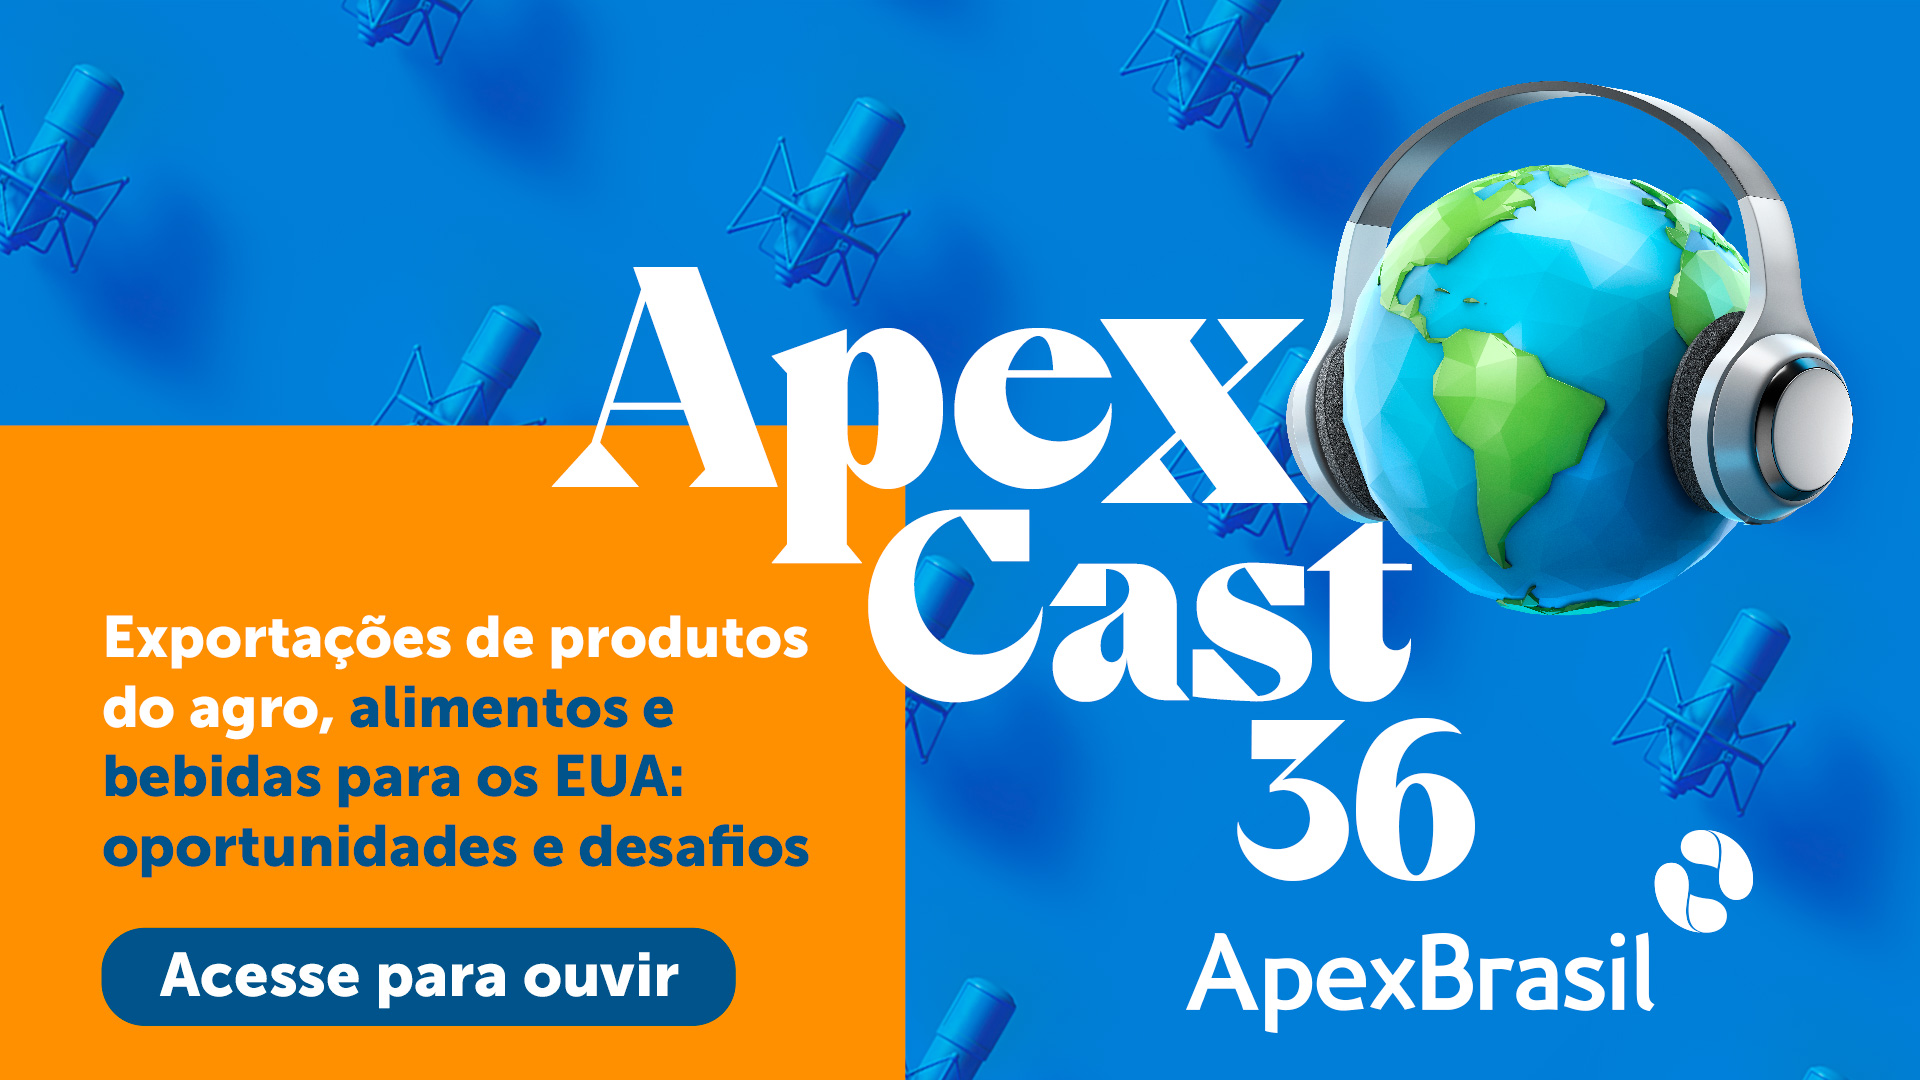 Última edição do ApexCast em 2020 traz informações e dicas para exportações para os EUA